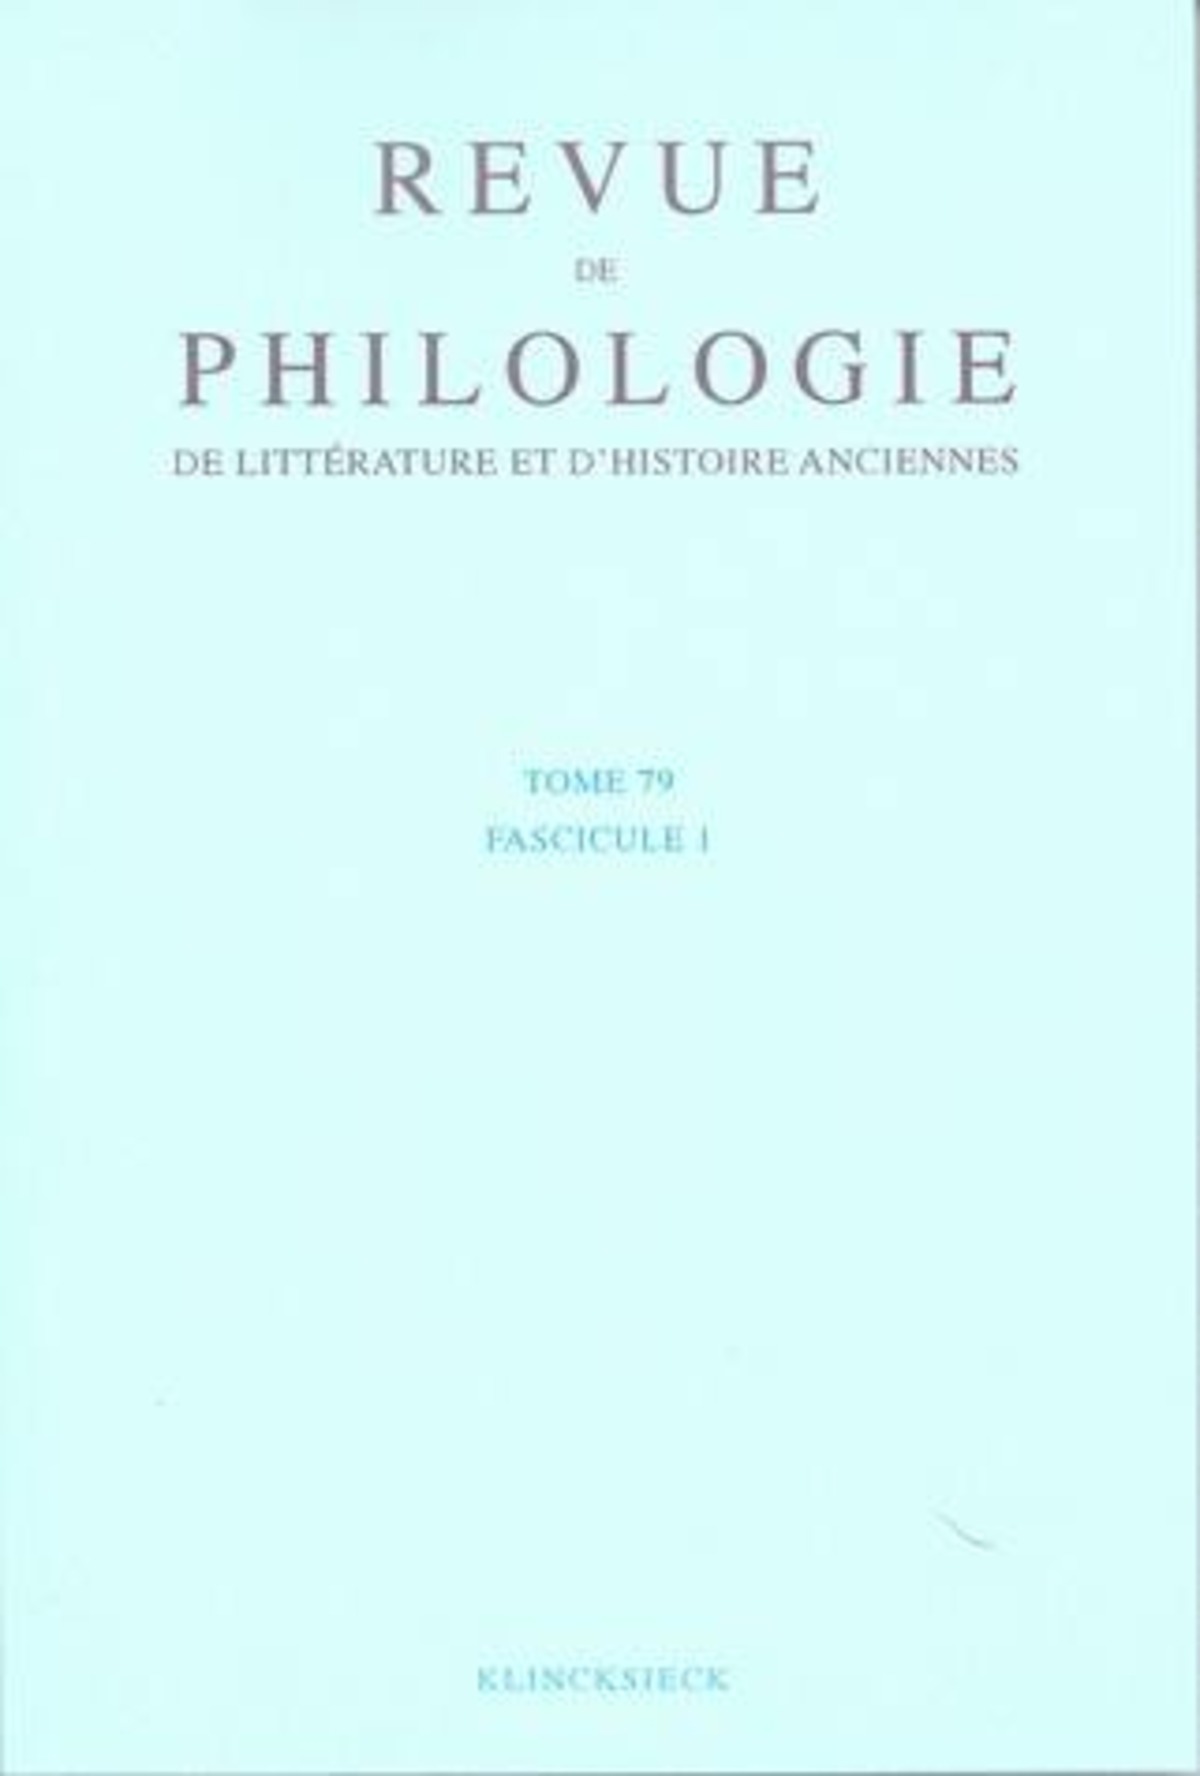 Revue de philologie, de littérature et d'histoire anciennes volume 79